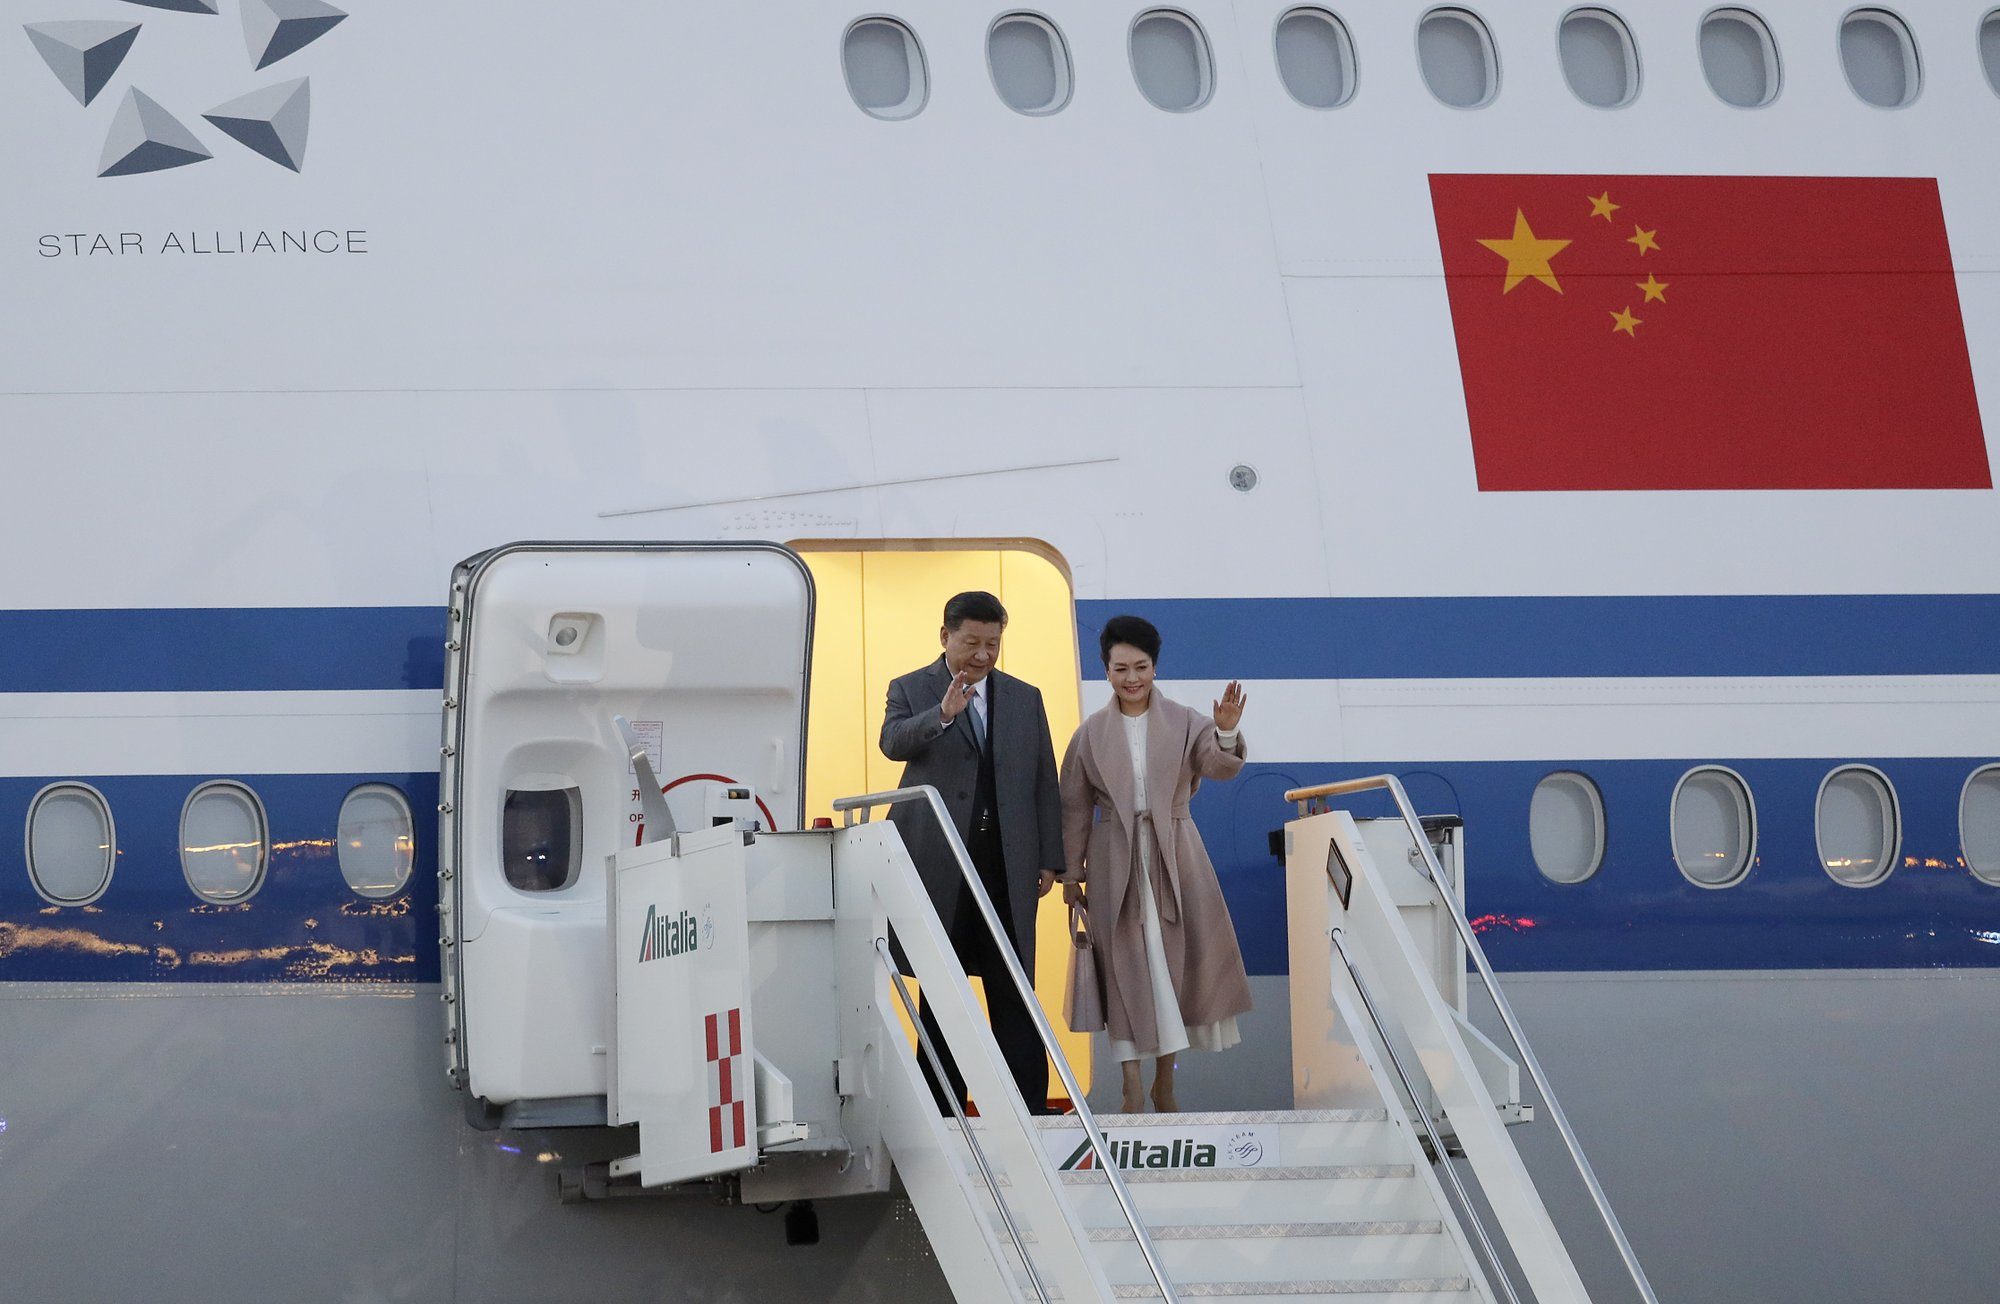 Xi Jinping visiting italy